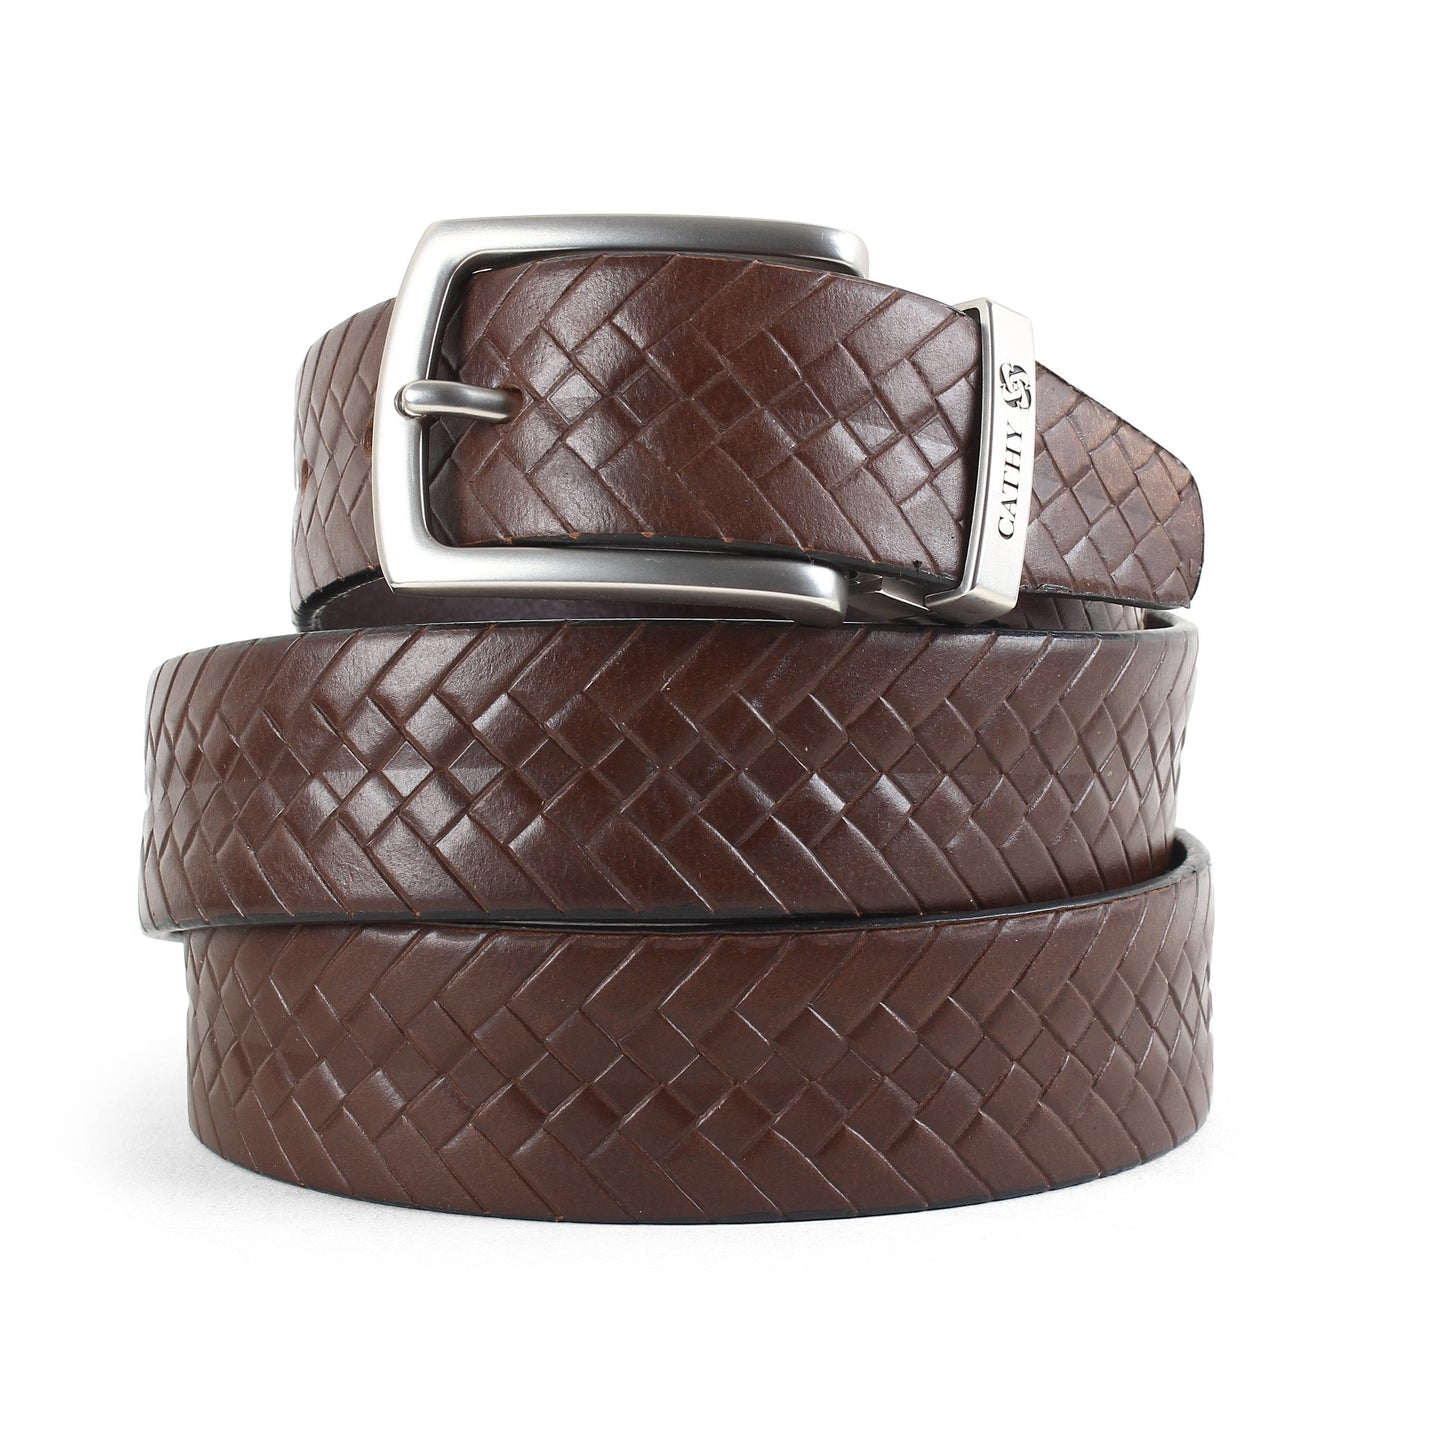 Men's Classic Dress Belt Top Grain Italian Leather with Metal Buckle